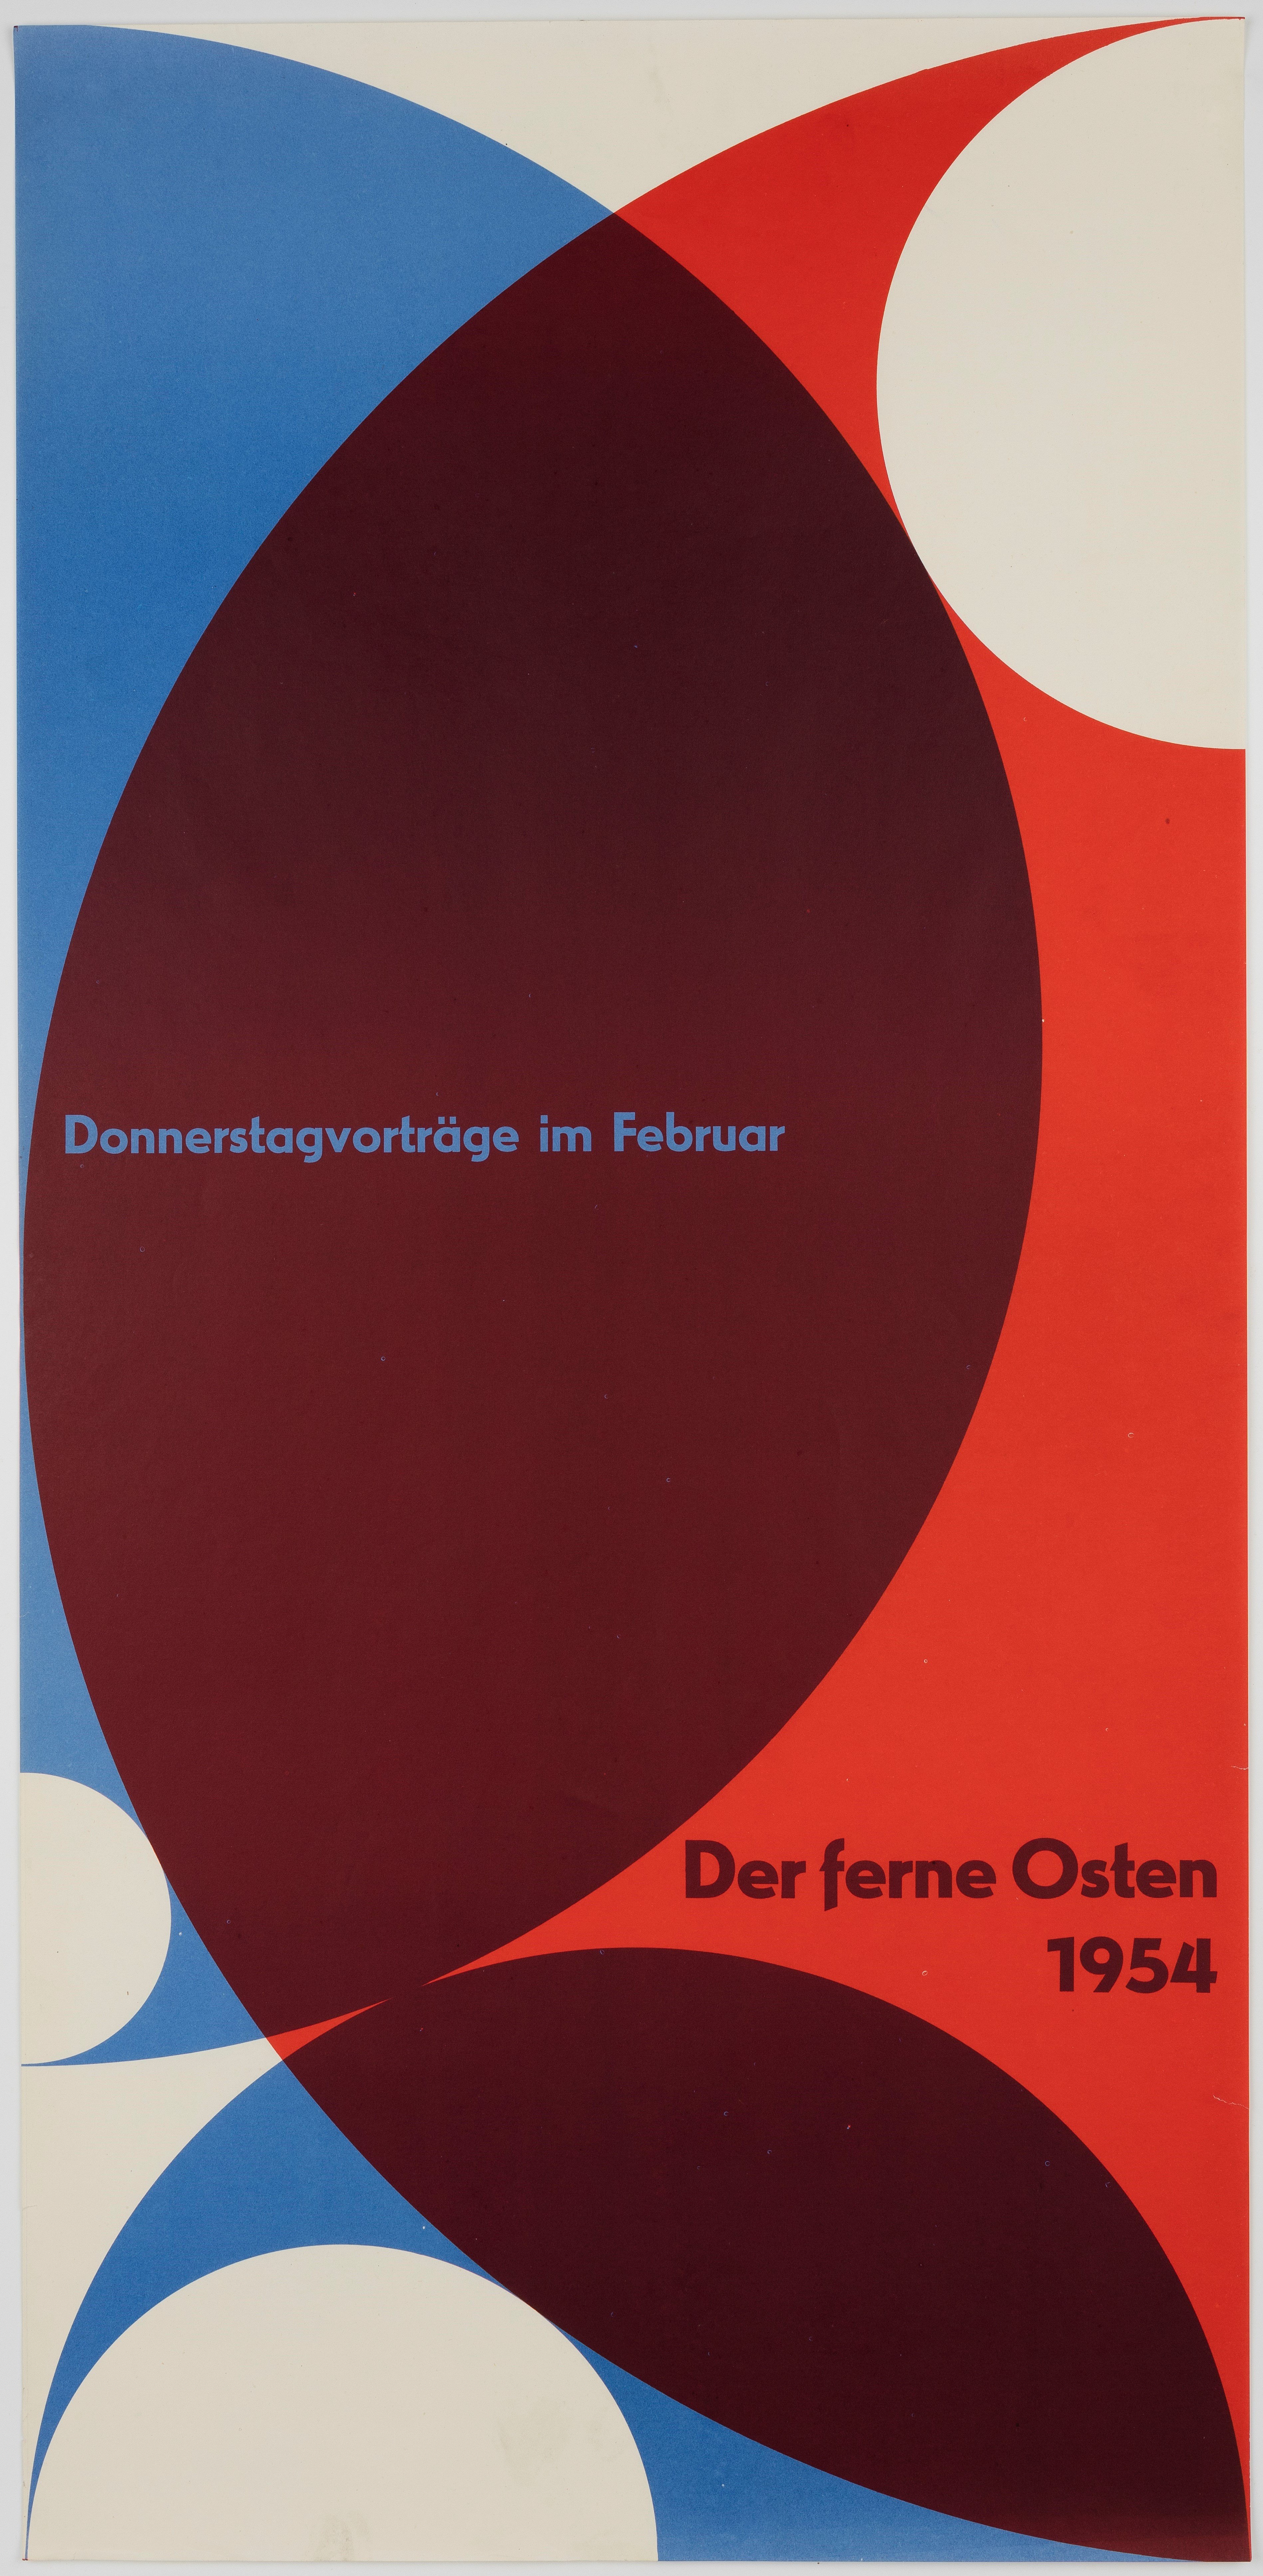 Der ferne Osten 1954 (Museum Ulm/HfG-Archiv Ulm, Florian Aicher RR-P)